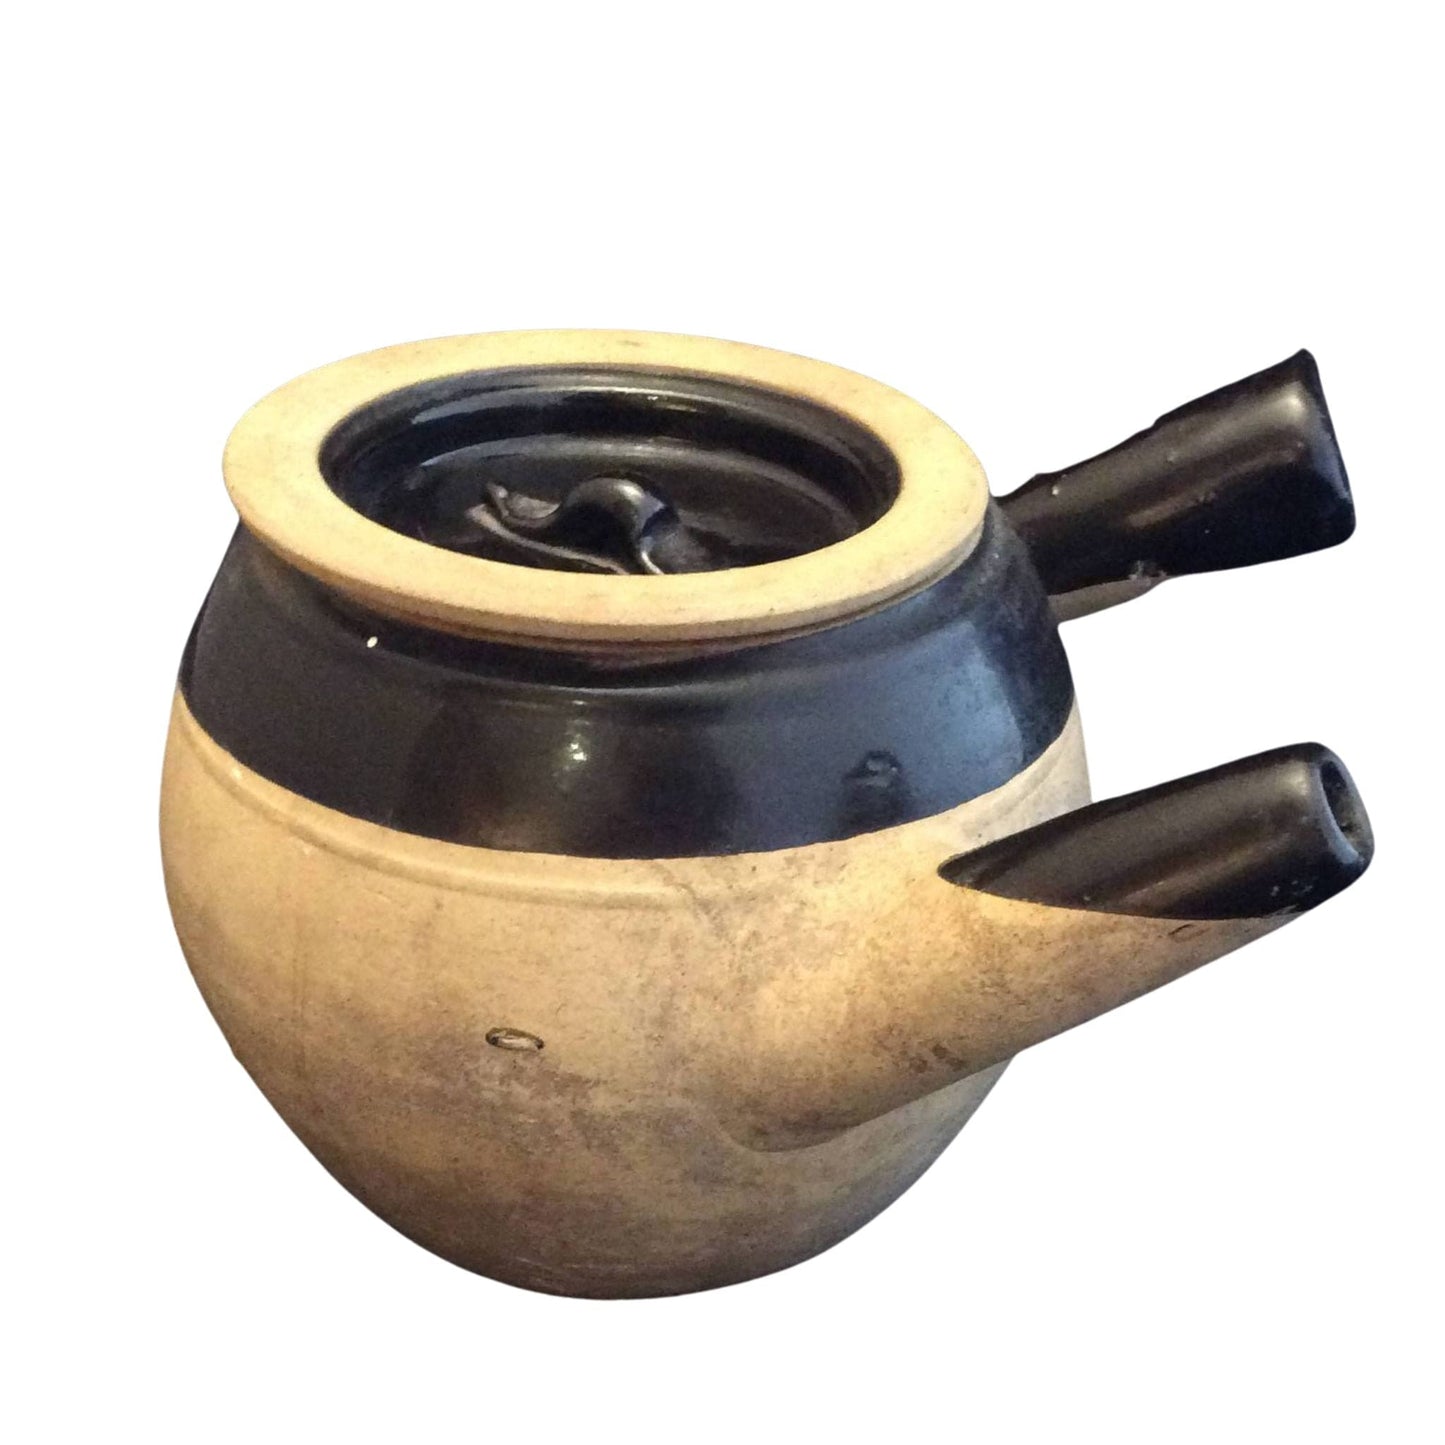 Vintage Clay Teapot Brown / Clay / Vintage 1960s